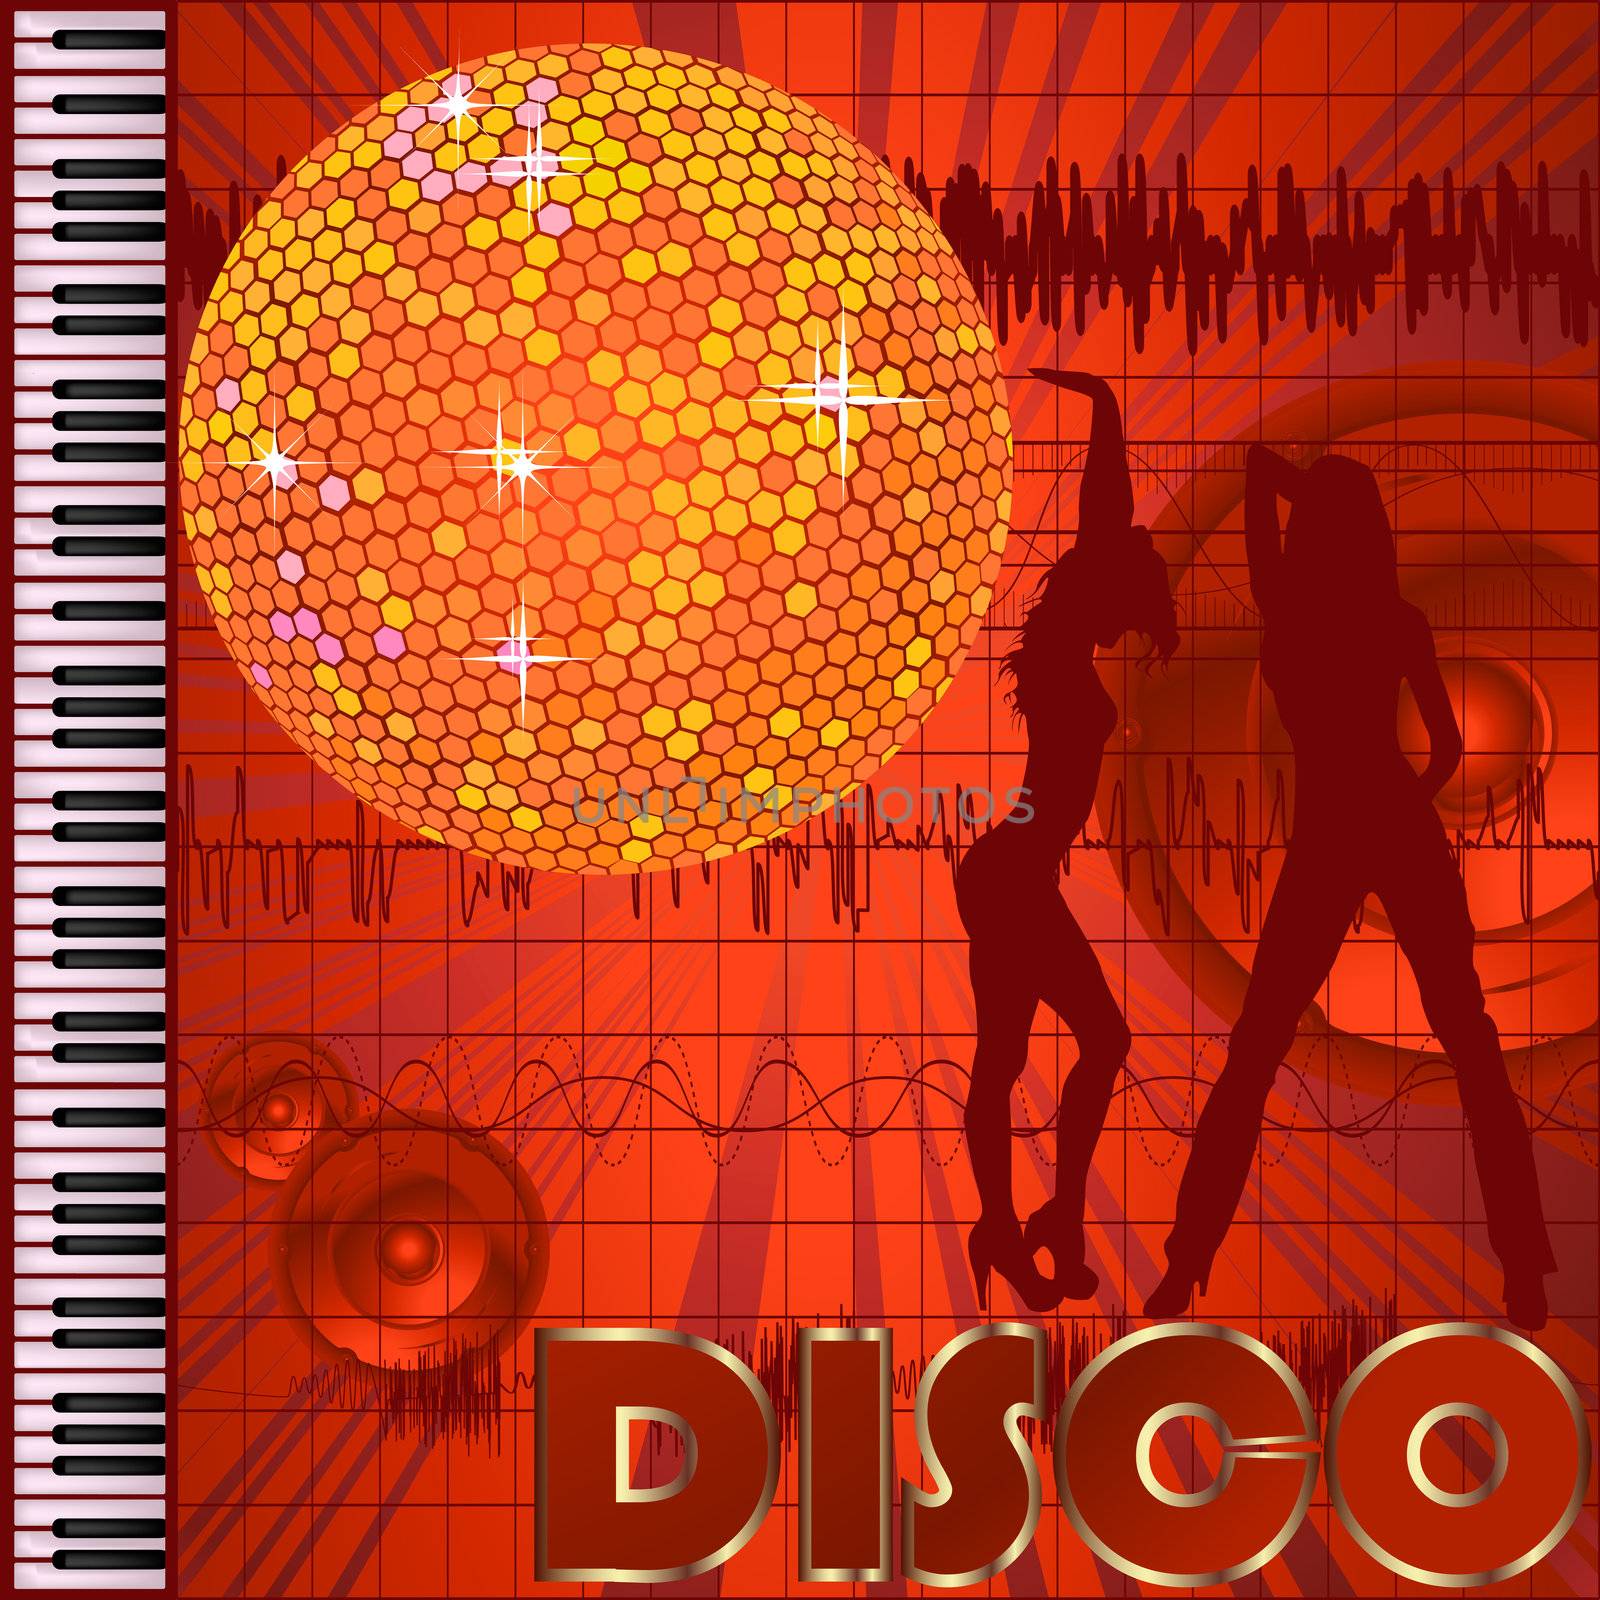 Disco club background by Lirch